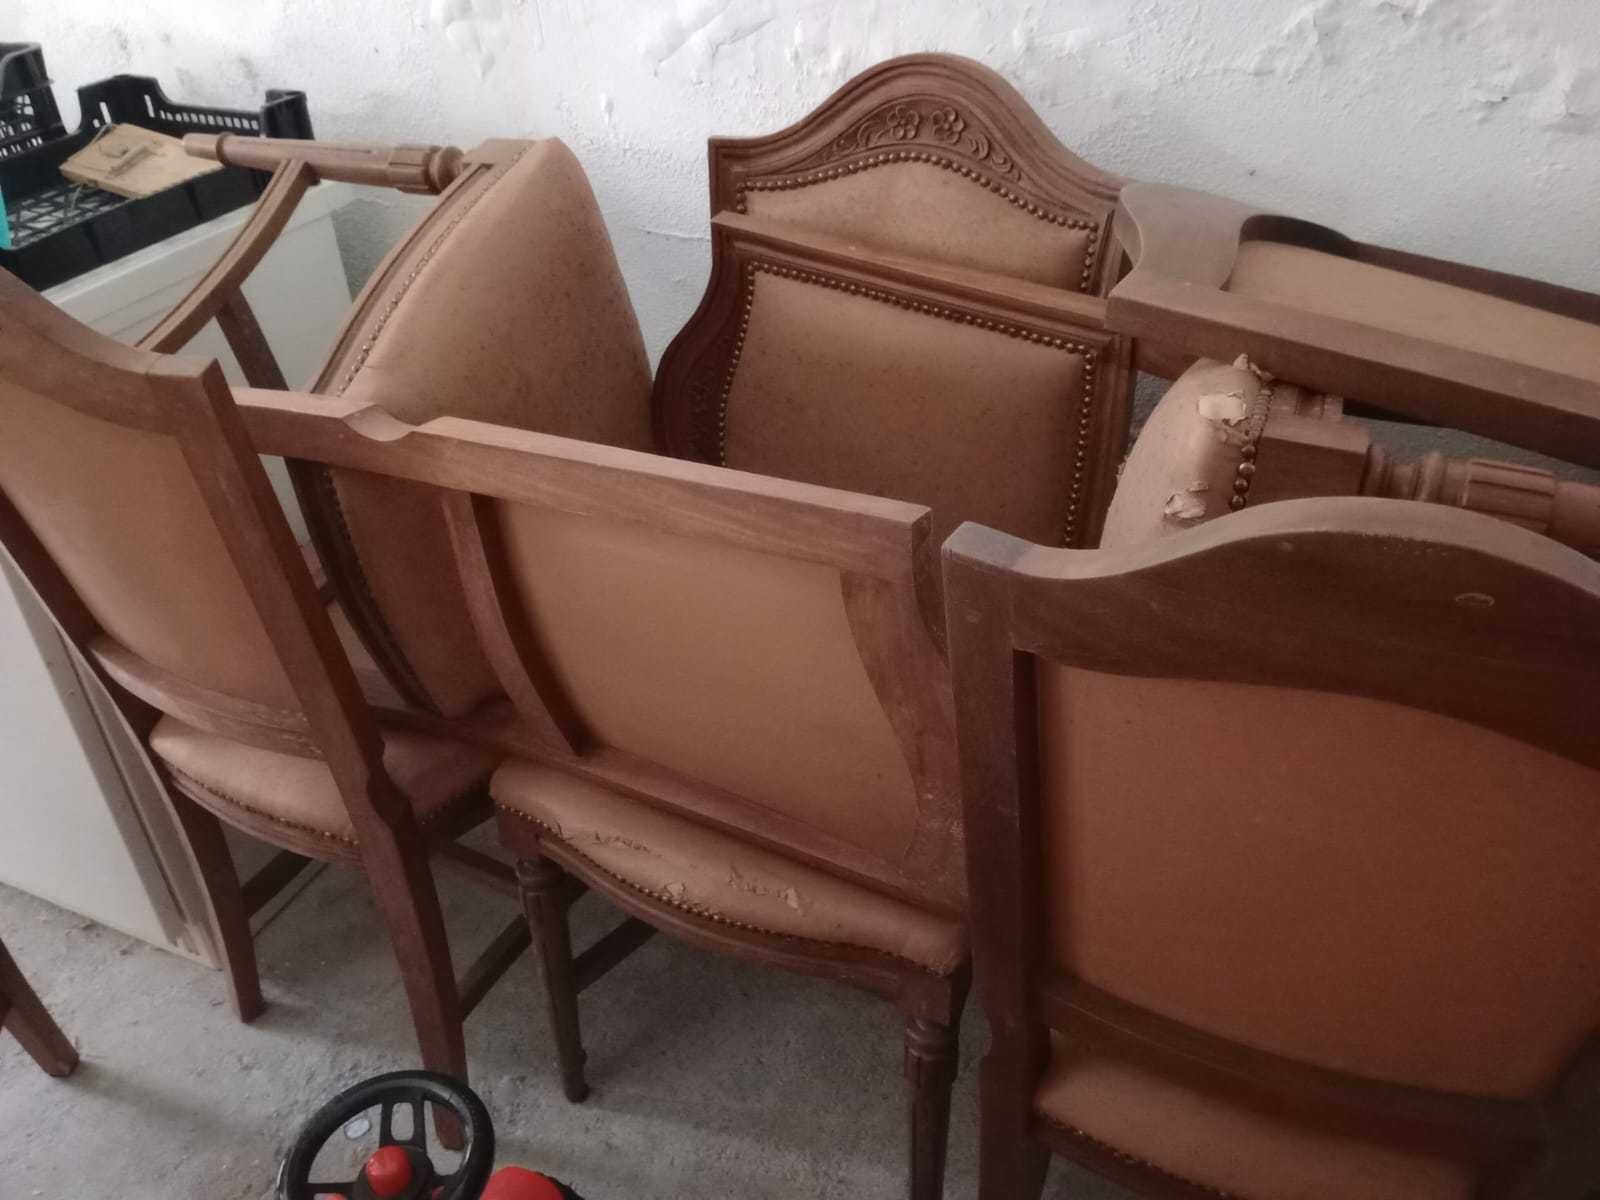 Cadeiras antigas em cerejeira (8 unid) - bom estado de conservação